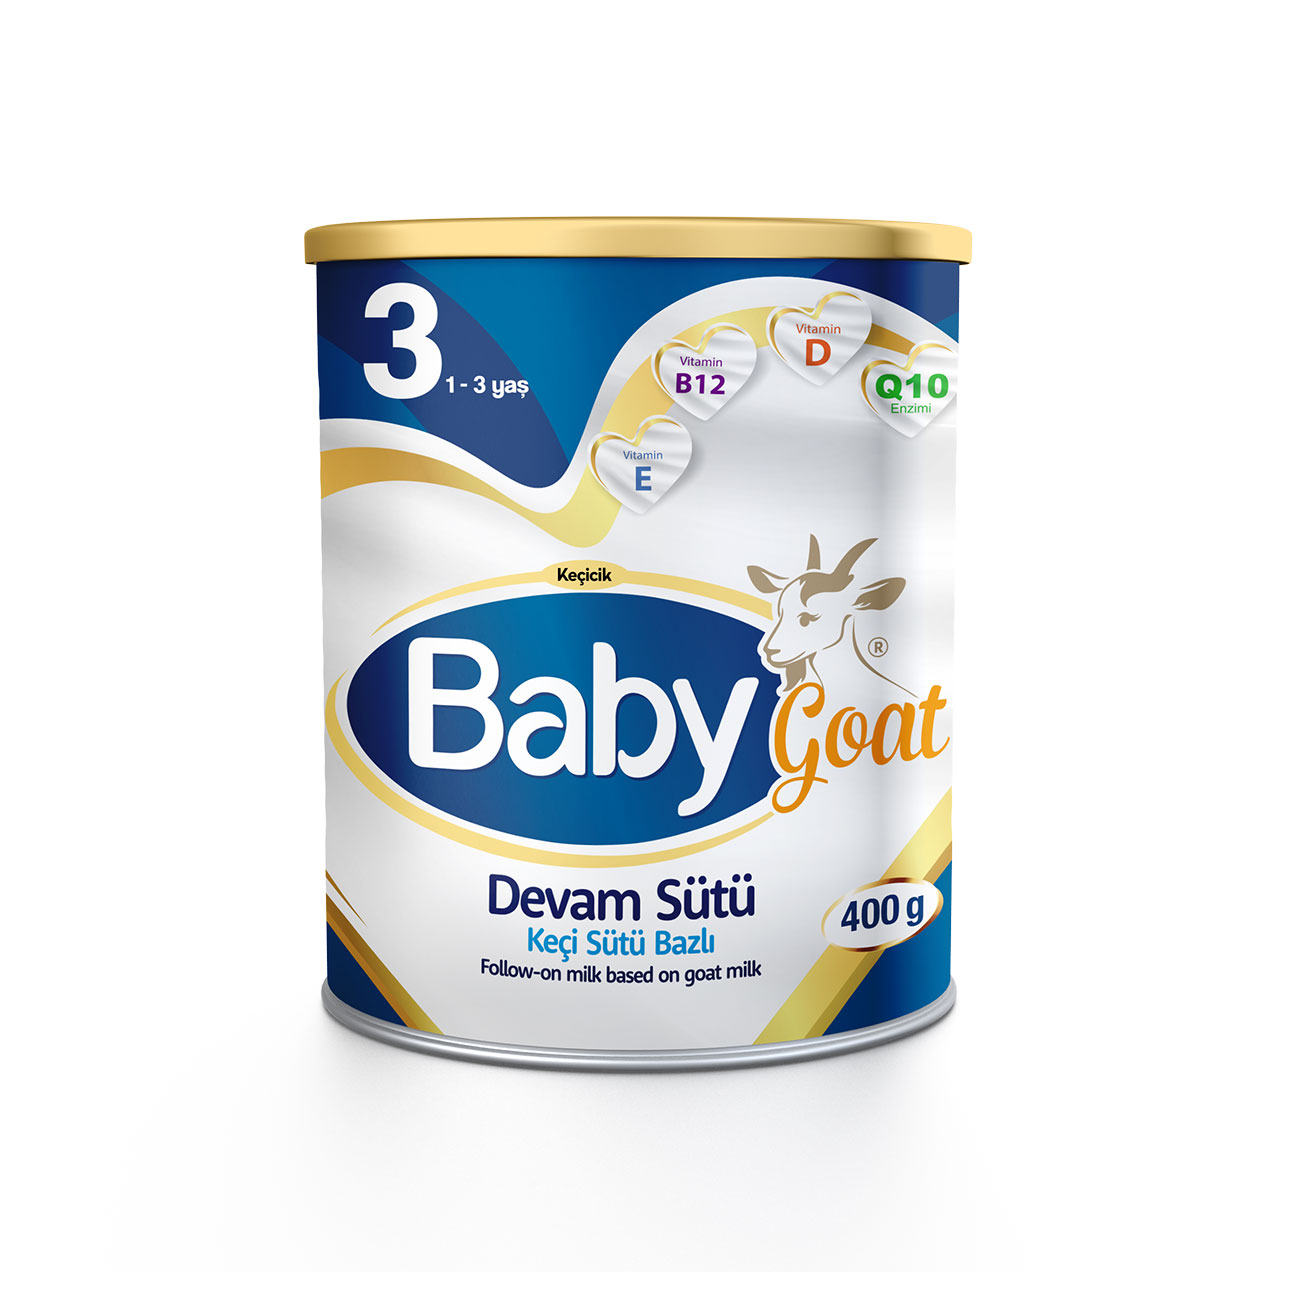 Baby Goat 3 Keçi Sütü Bazlı Devam Sütü 400gr